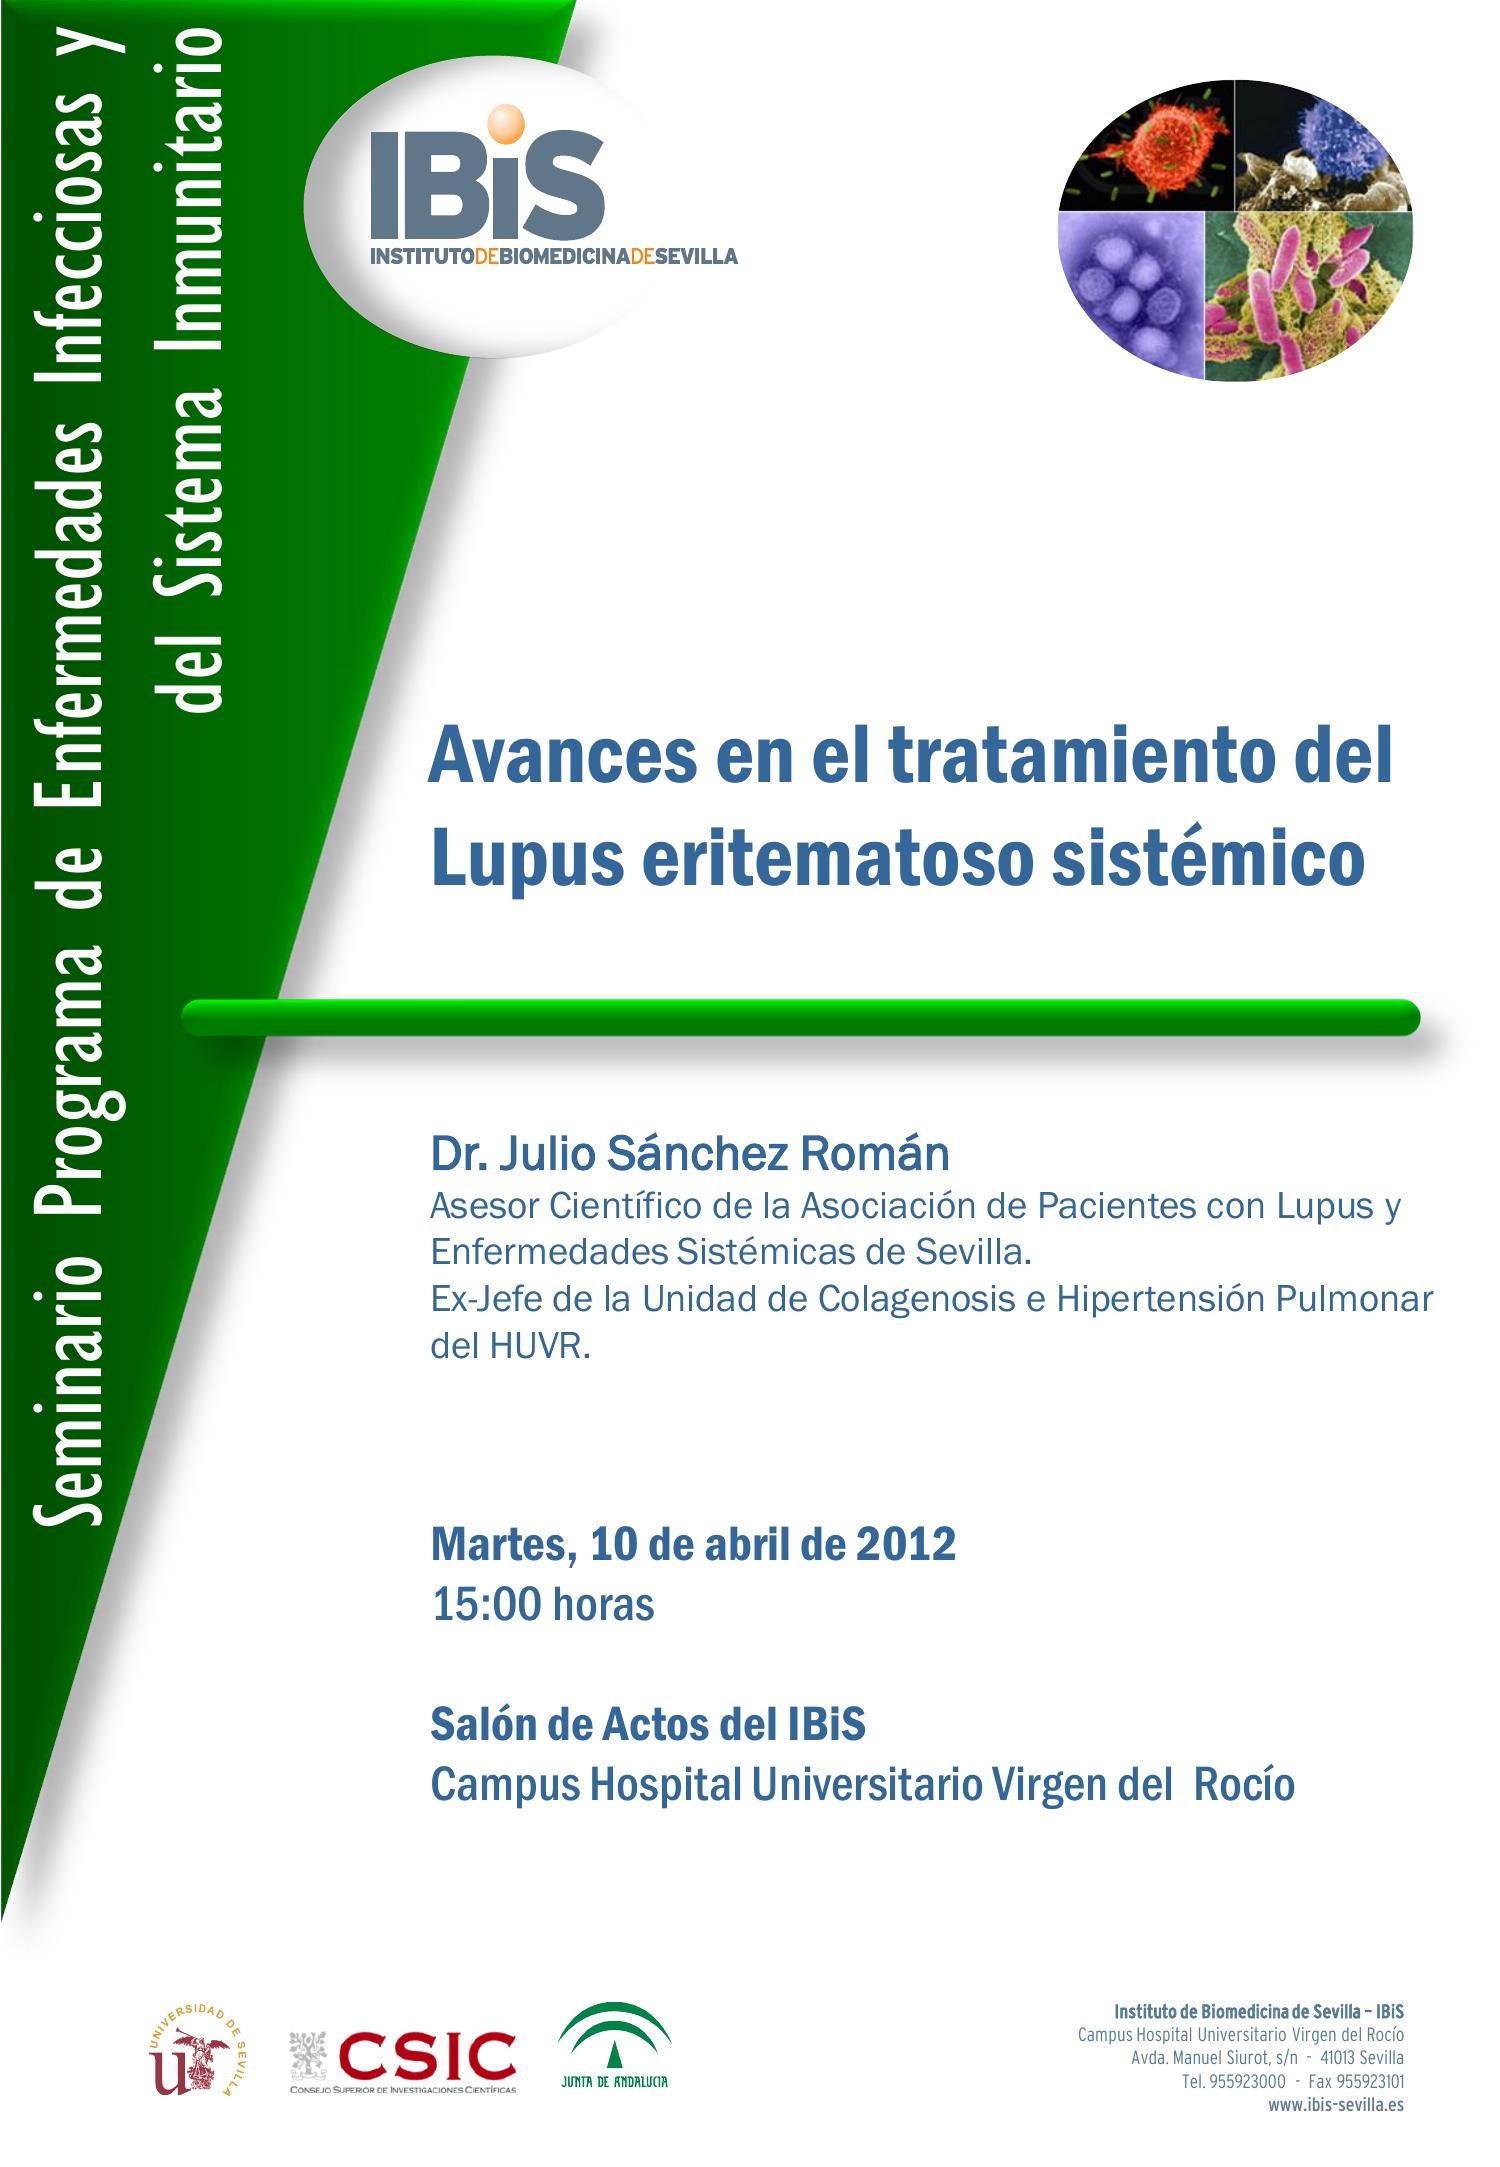 Poster: Avances en el tratamiento del Lupus eritematoso sistémico.